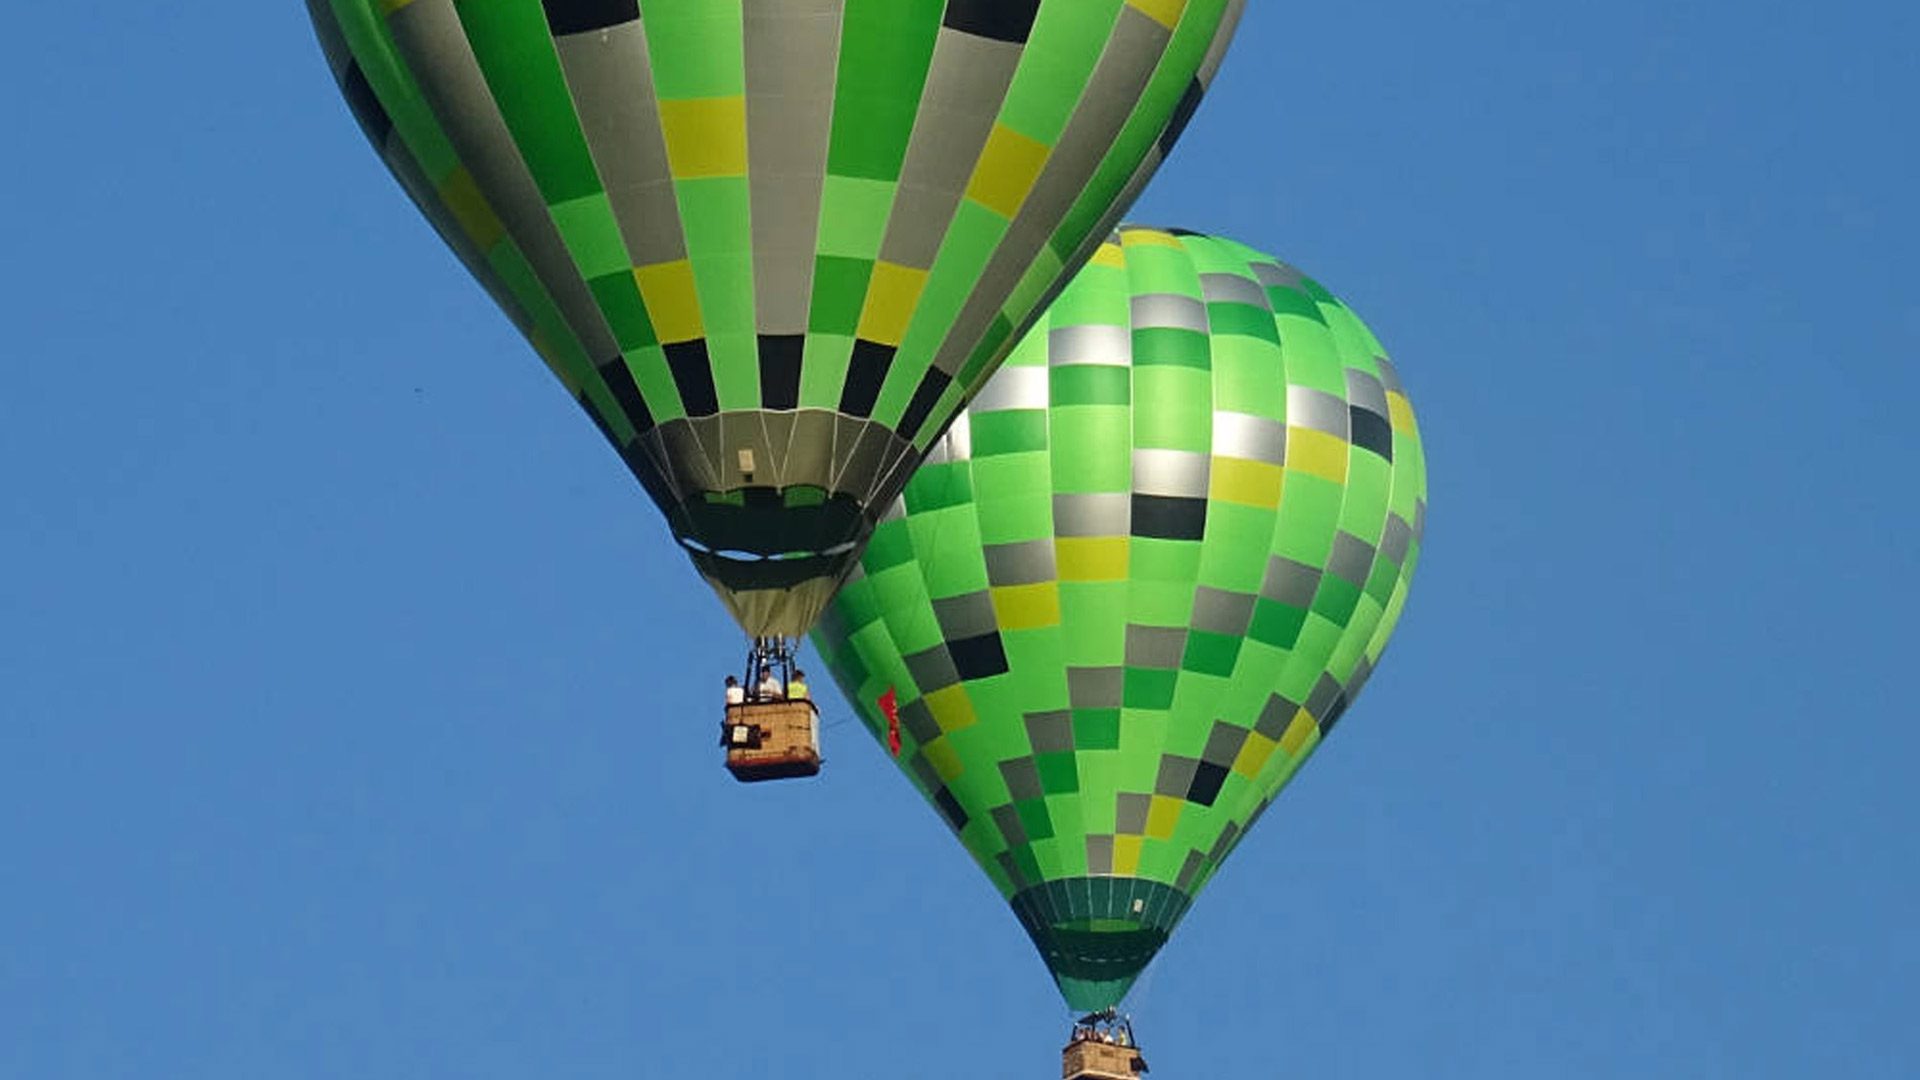 Vol en globus aerostàtic des d'Albi: convertiu-vos en passatgers del vent!